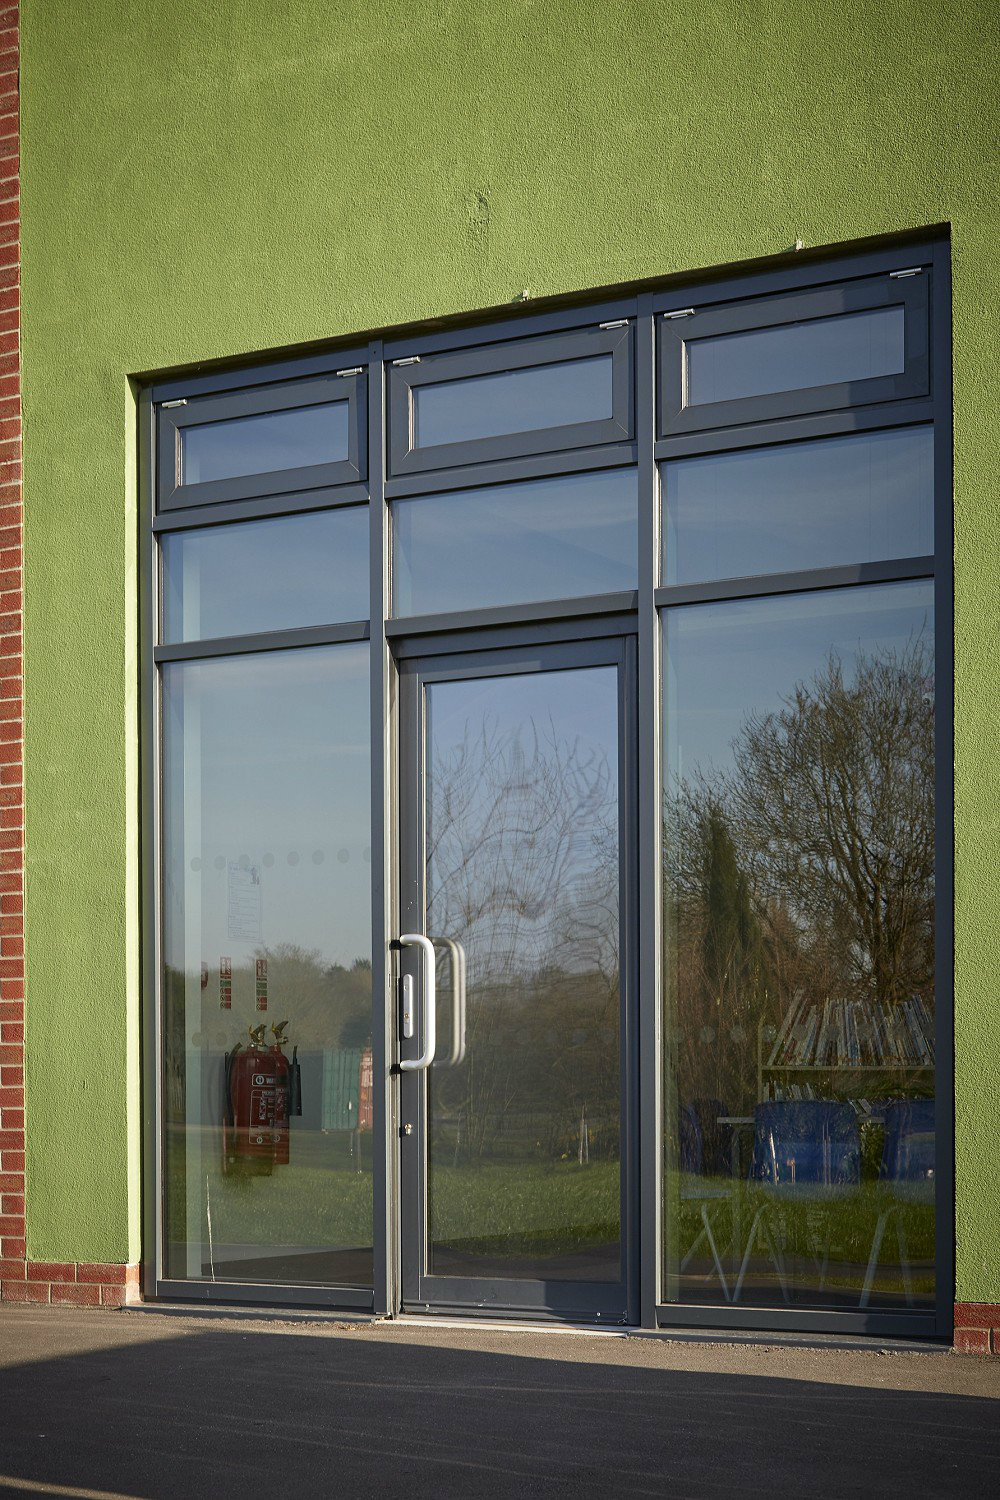 Aluminium entrance doors at a Hull school